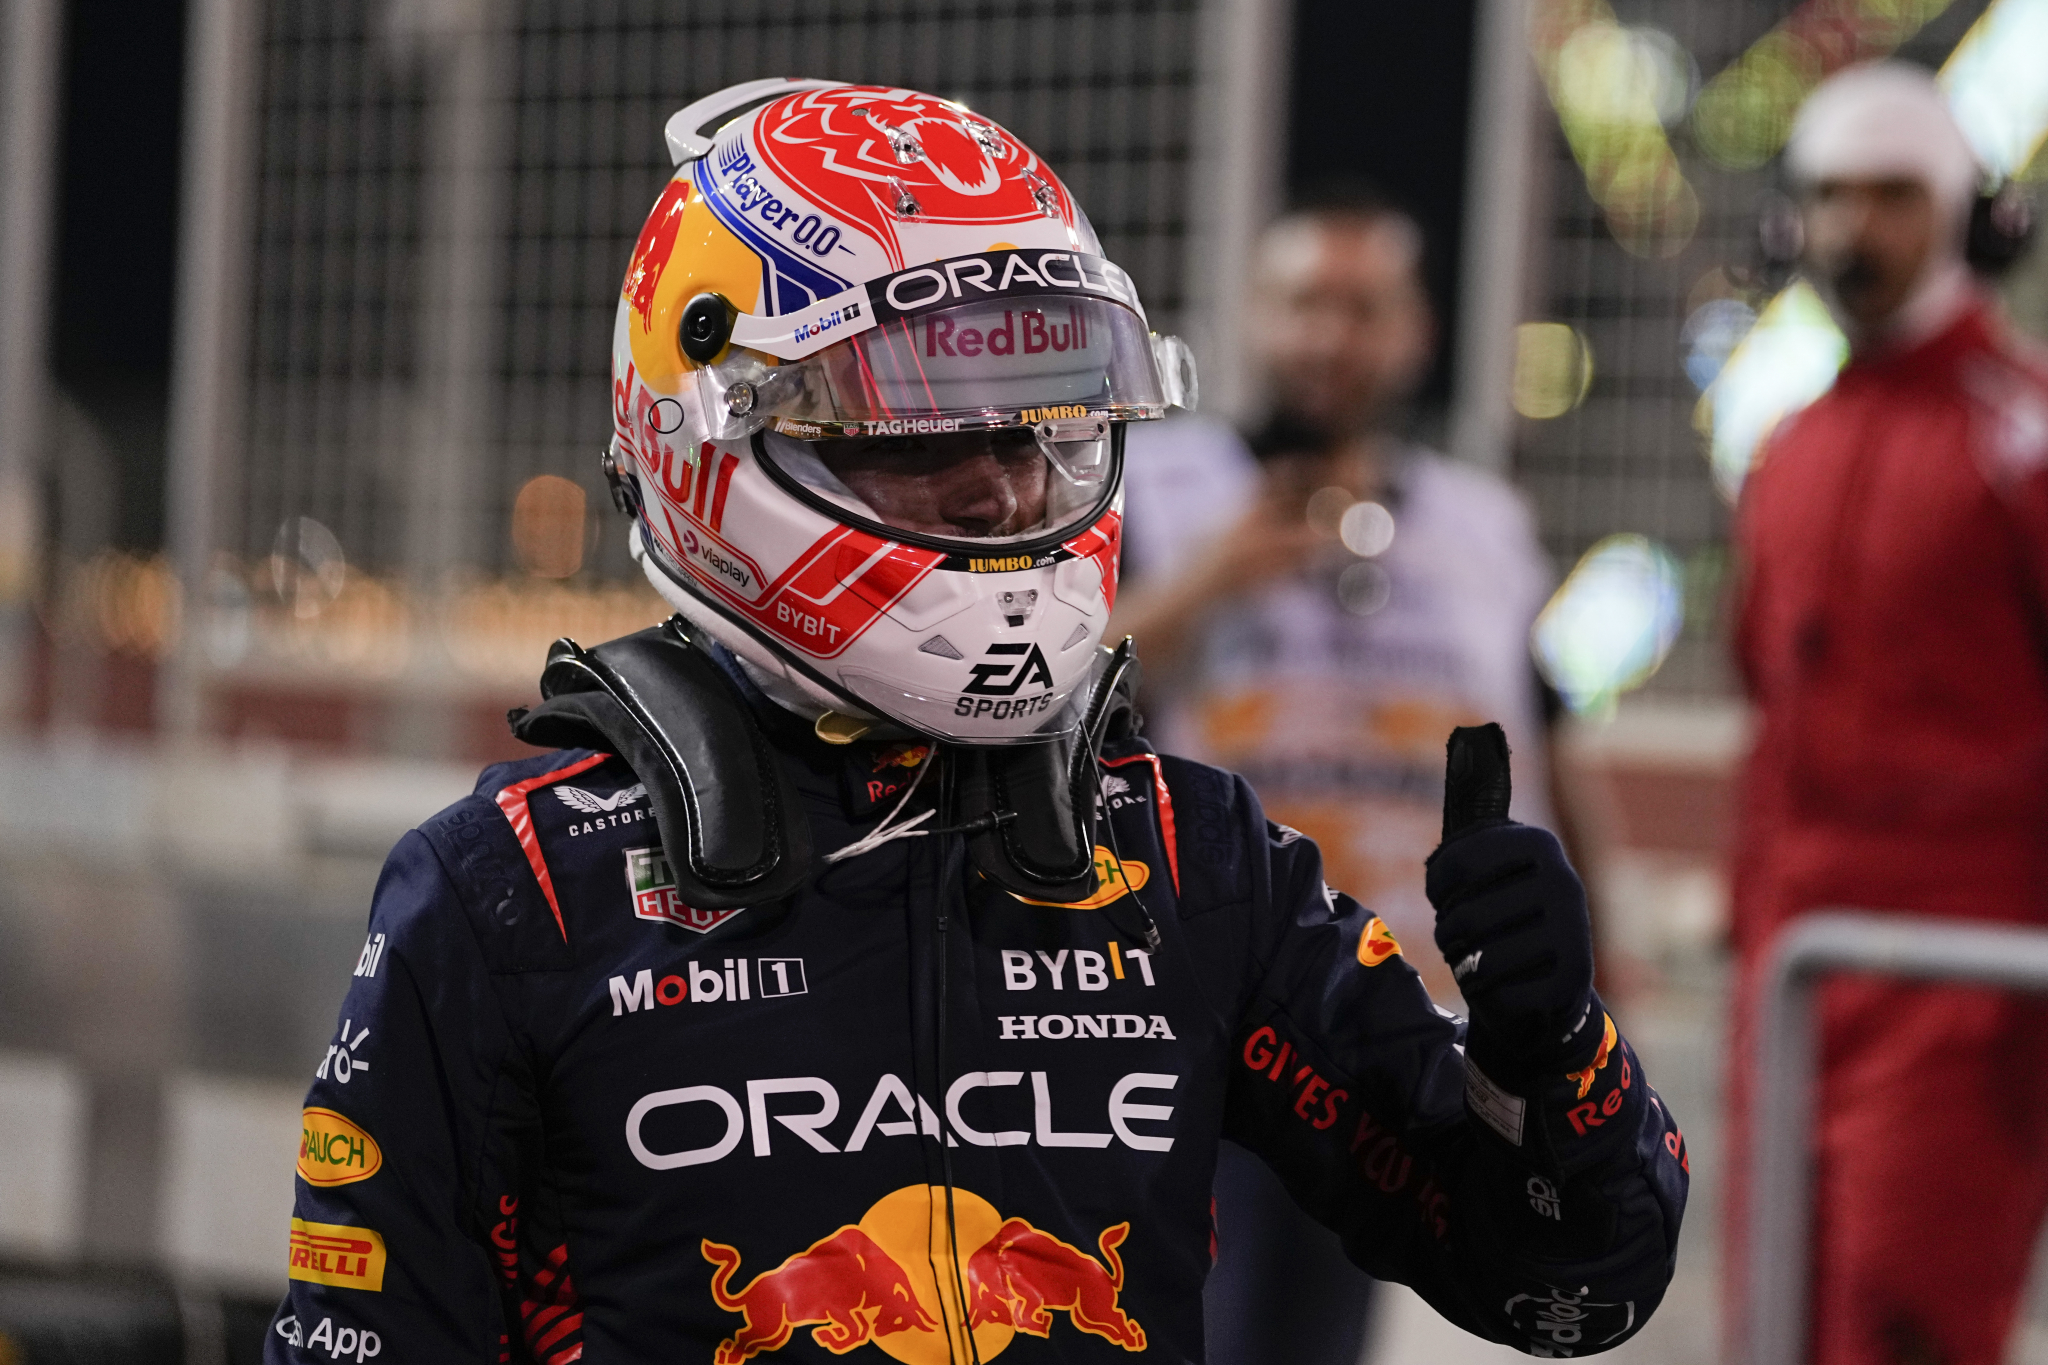 PONOVO RADI BIOSKOP Ferstapenu pol pozicija pred prvu trku u novoj sezoni Formule 1